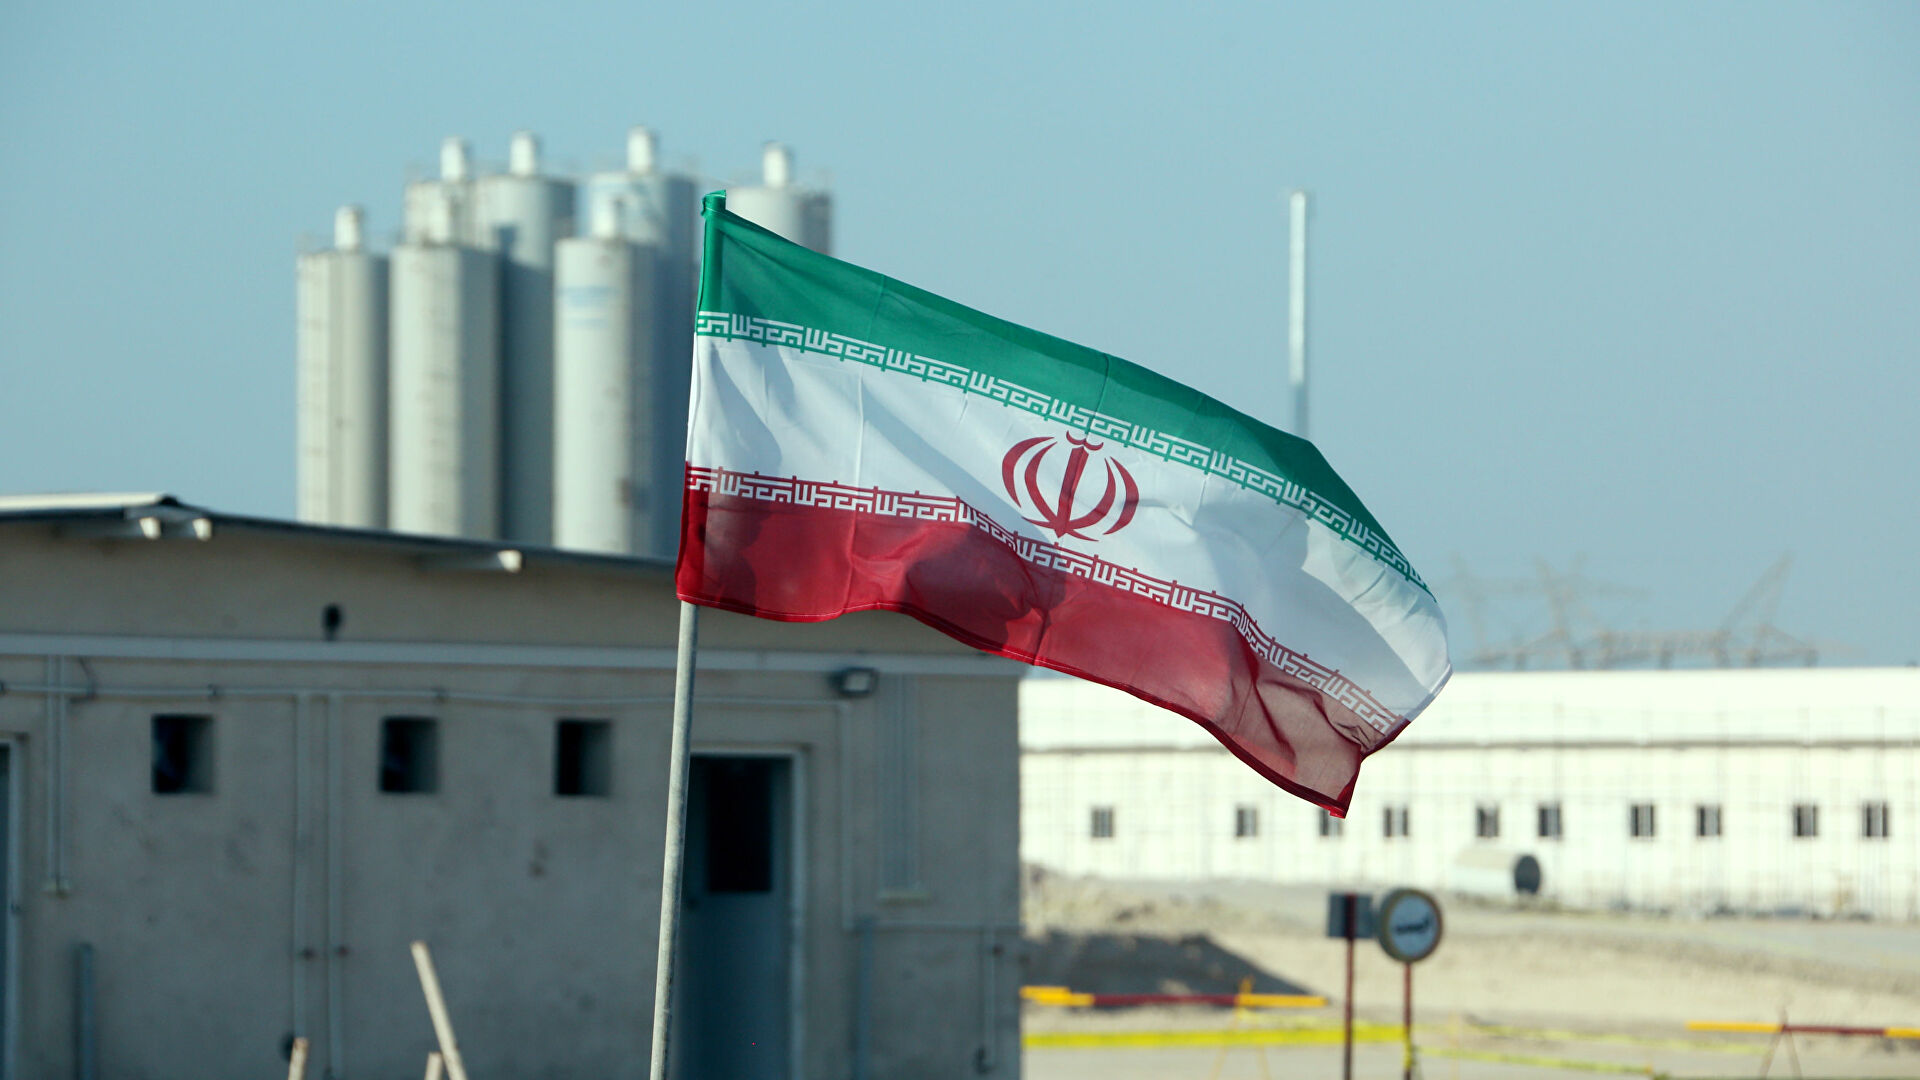 Απόπειρα σαμποτάζ σε κτίριο του Οργανισμού Ατομικής Ενέργειας του Ιράν